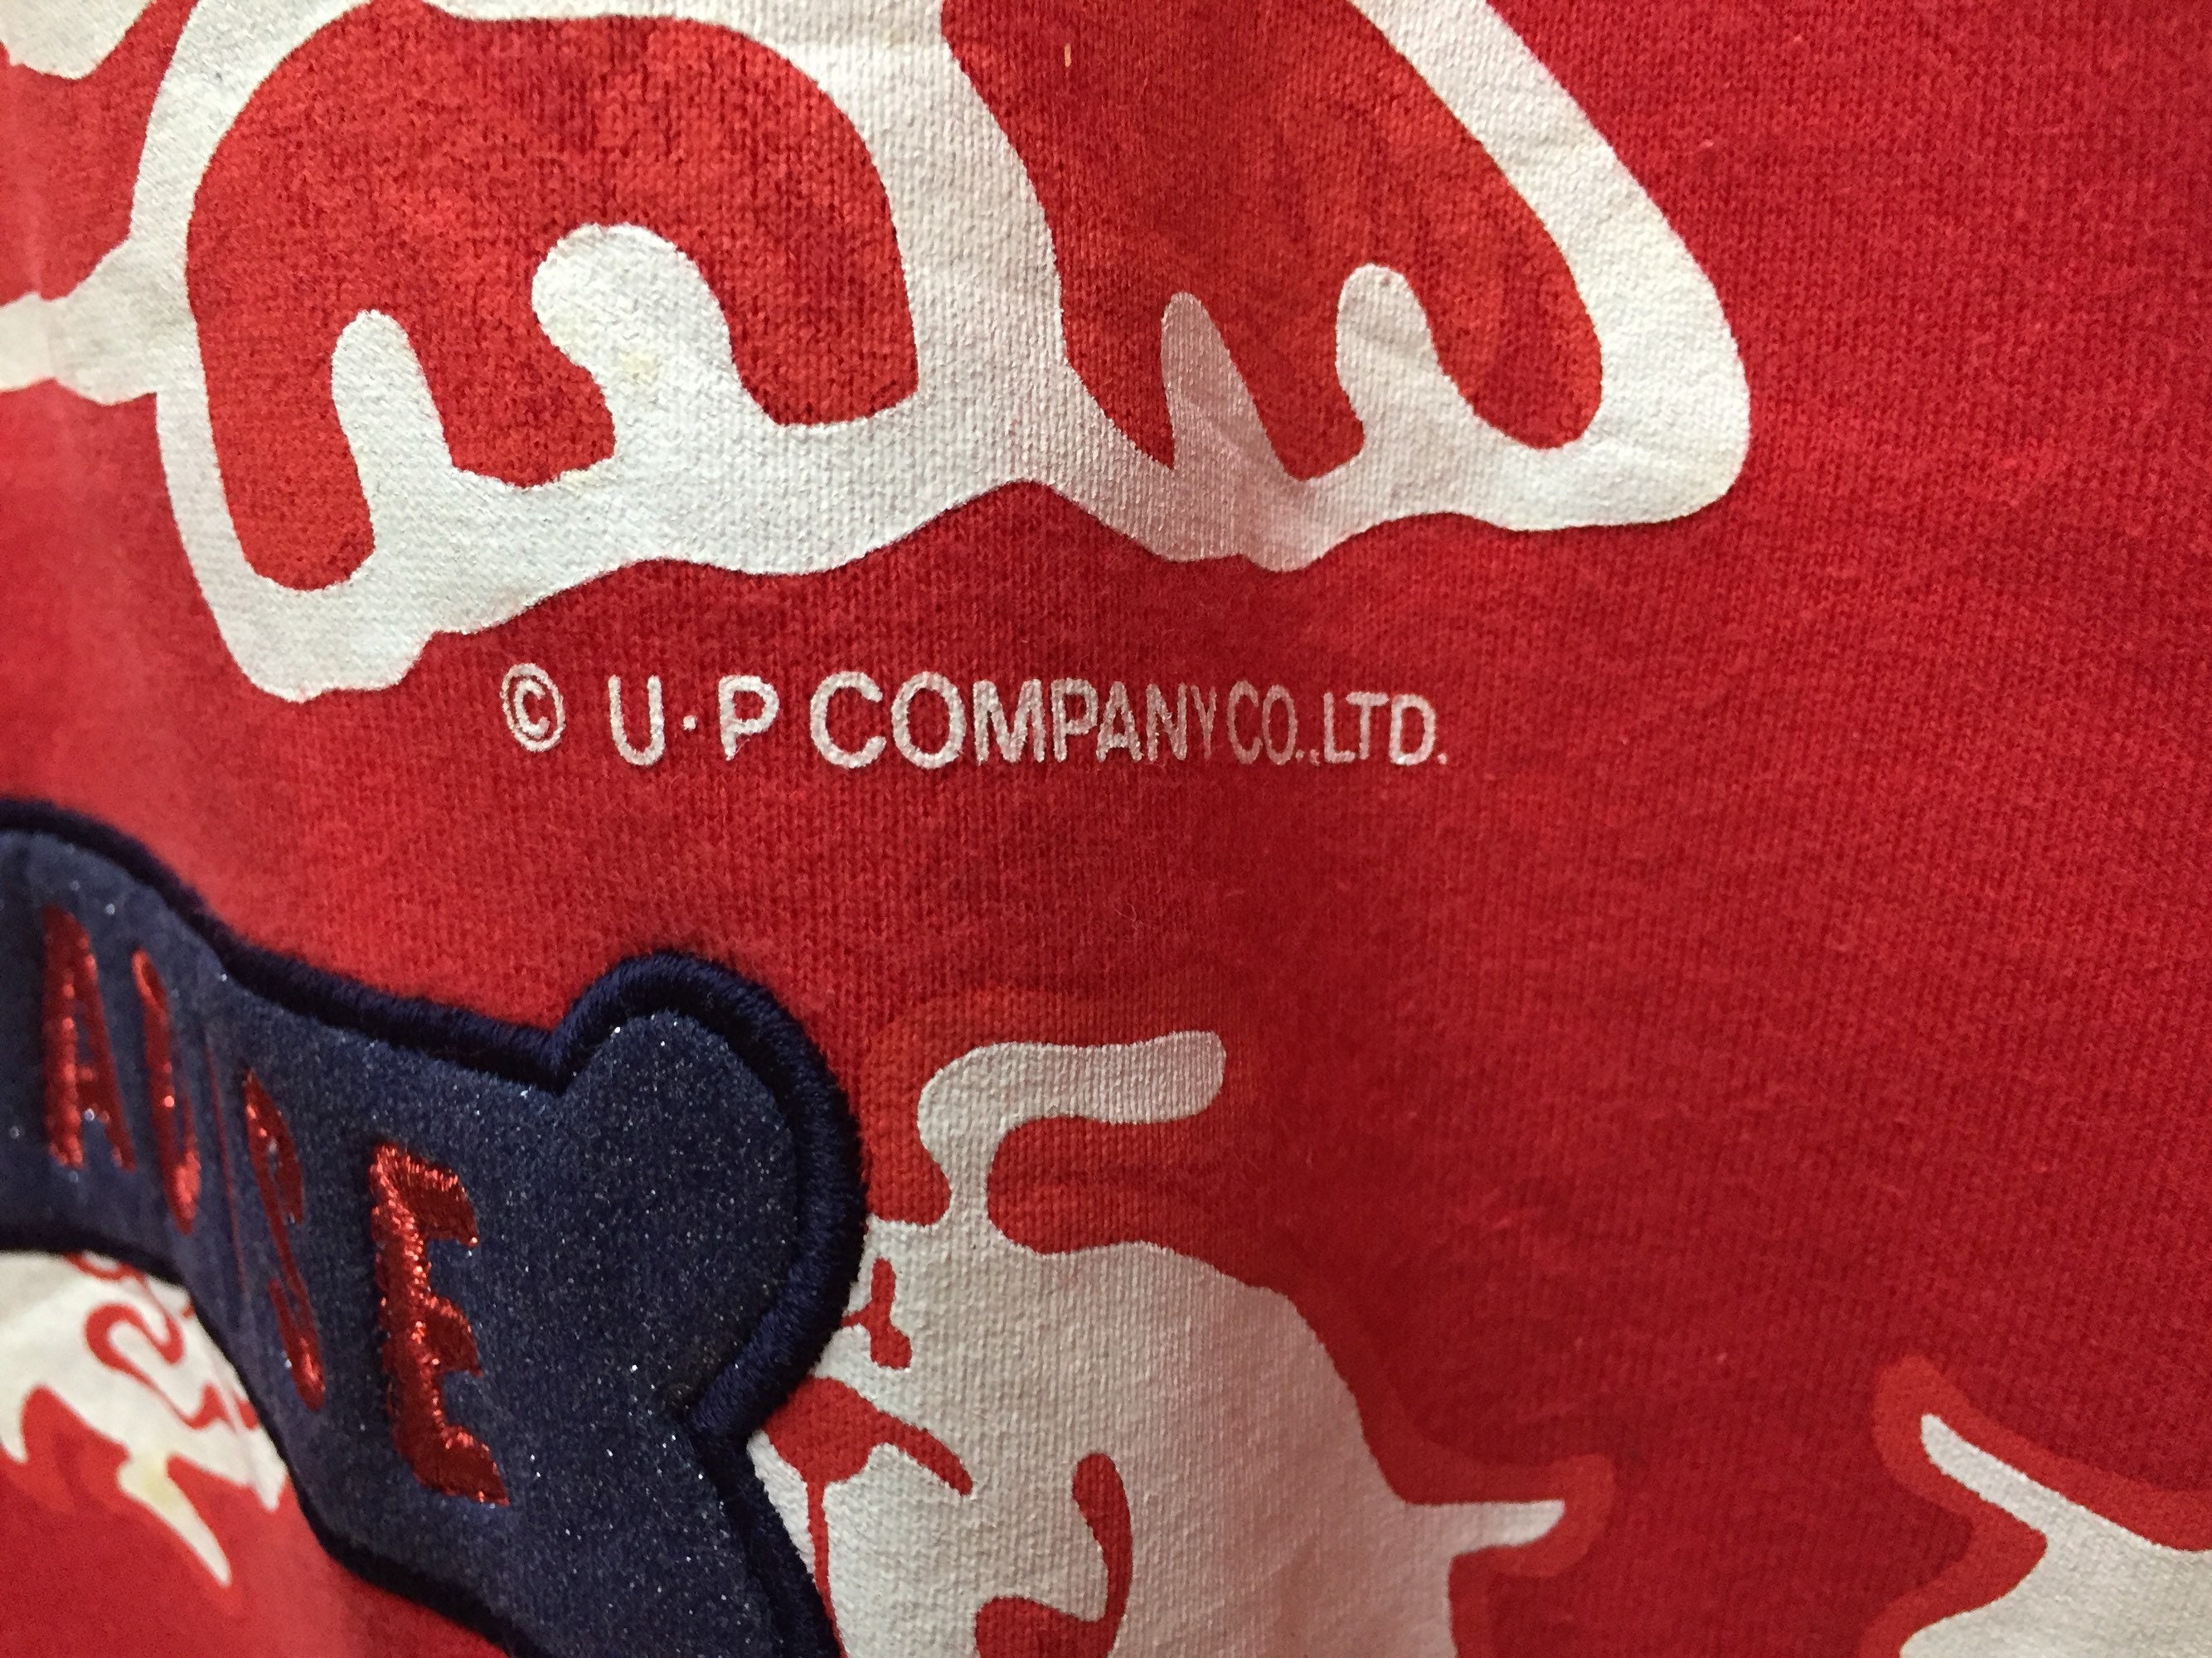 Rare Vintage USPP Sweatshirt / Full Print / United States of - Etsy